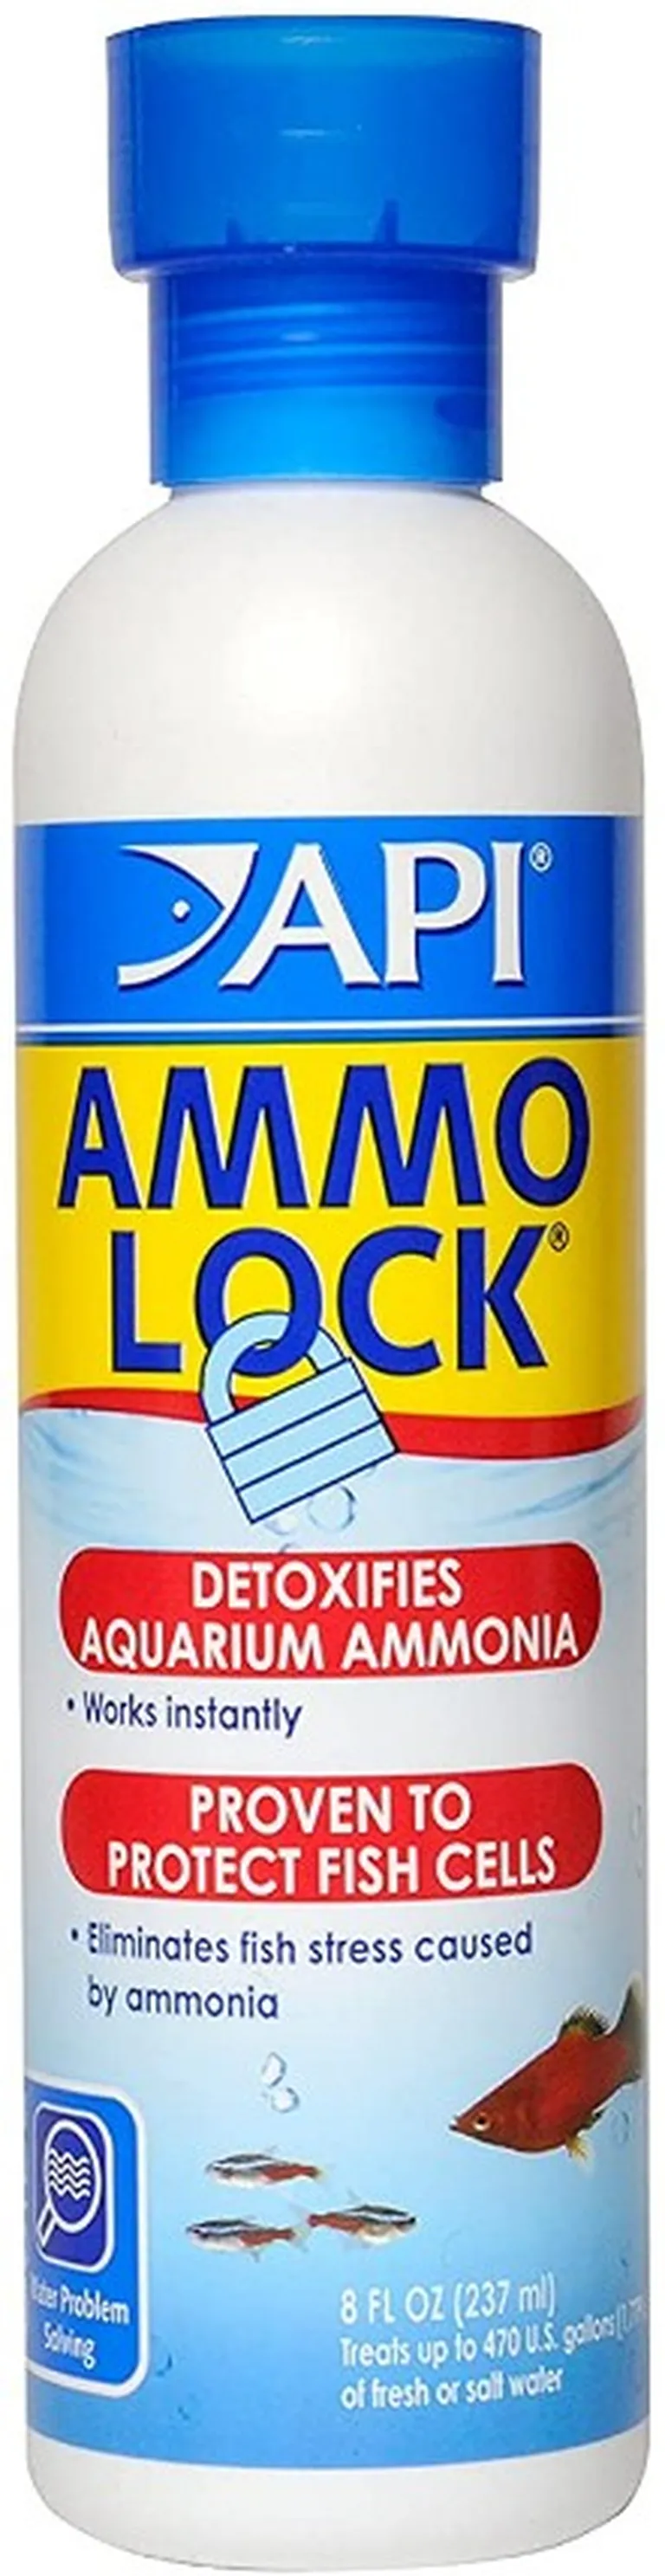 API Ammo Lock Detoxifies Aquarium Ammonia Photo 1